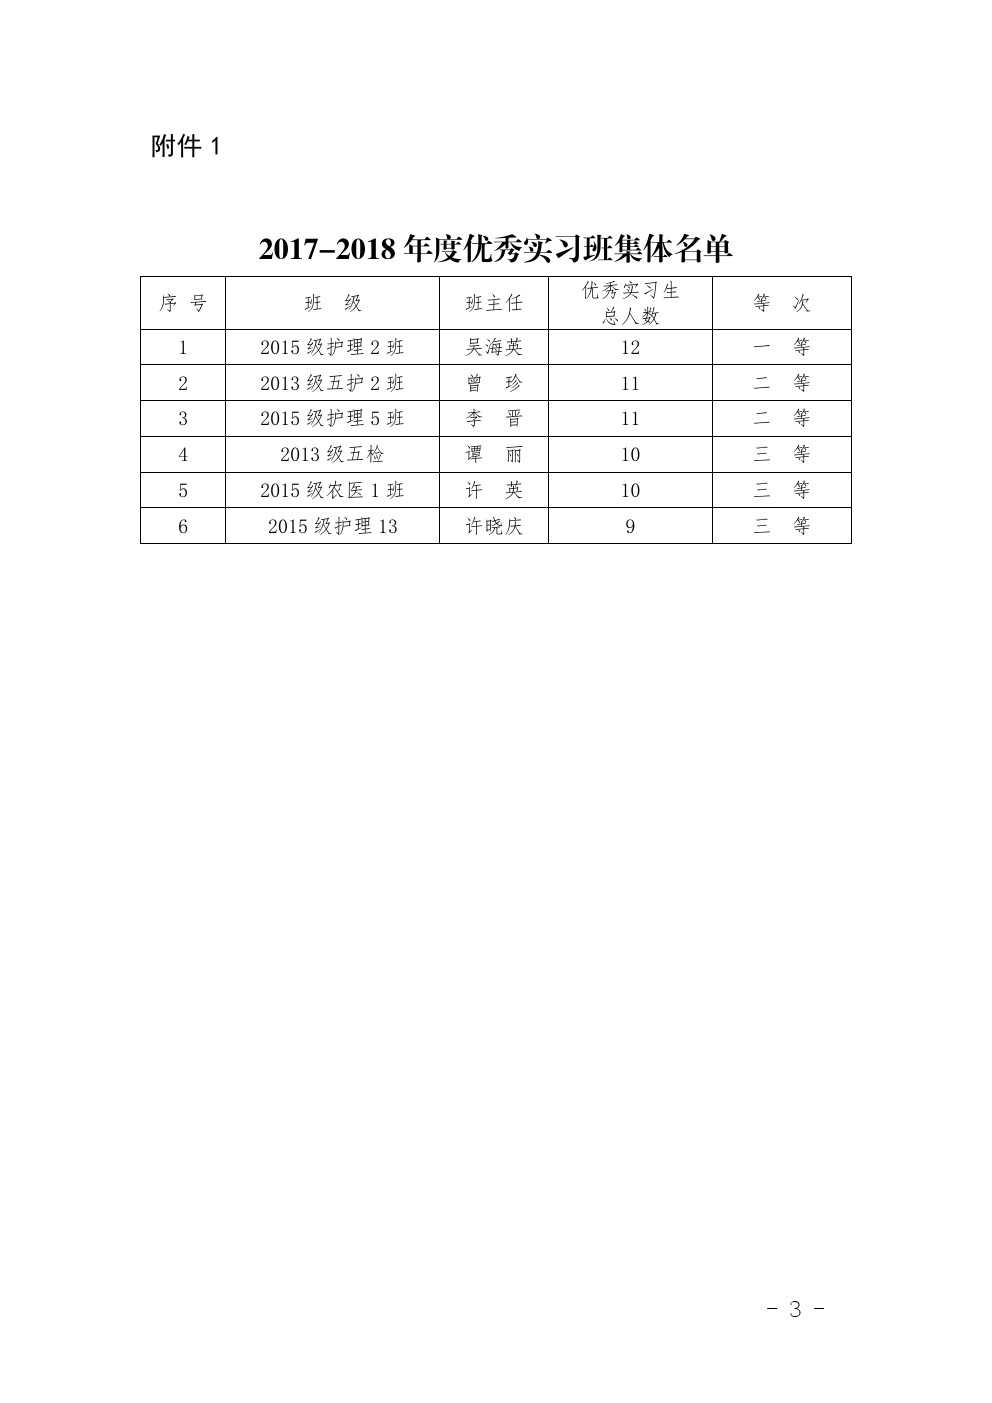 四川省南充卫生学校 关于表彰2017-2018年度优秀 实习班集体和优秀实习生的决定